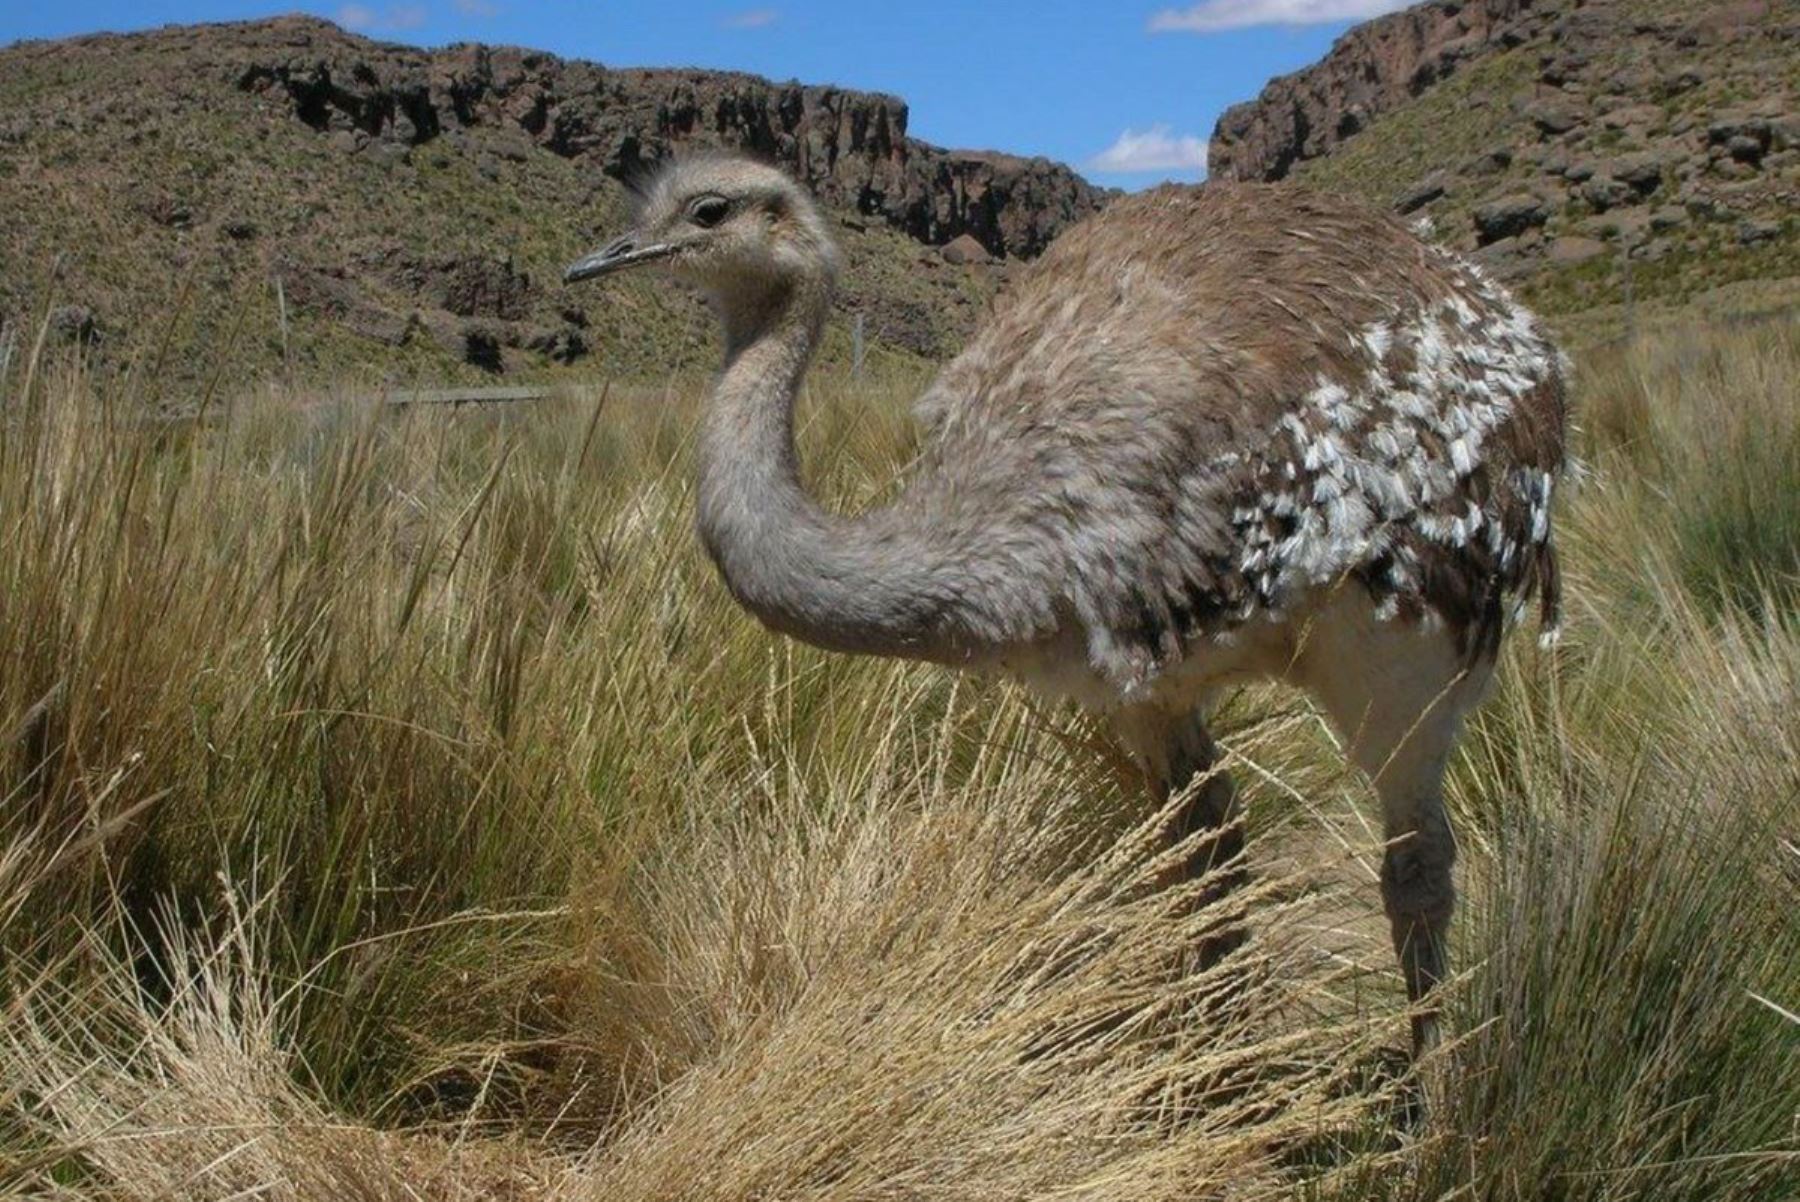 El Proyecto Especial Binacional Lago Titicaca (PEBLT) presentó a la comunidad puneña la publicación “Conservación del Suri (rhea pennata), avances y logros”, a fin de promover y concientizar en la ciudadanía la importancia del equilibrio ecológico y la conservación del llamado “avestruz de los andes”, que se encuentra en riesgo de extinción